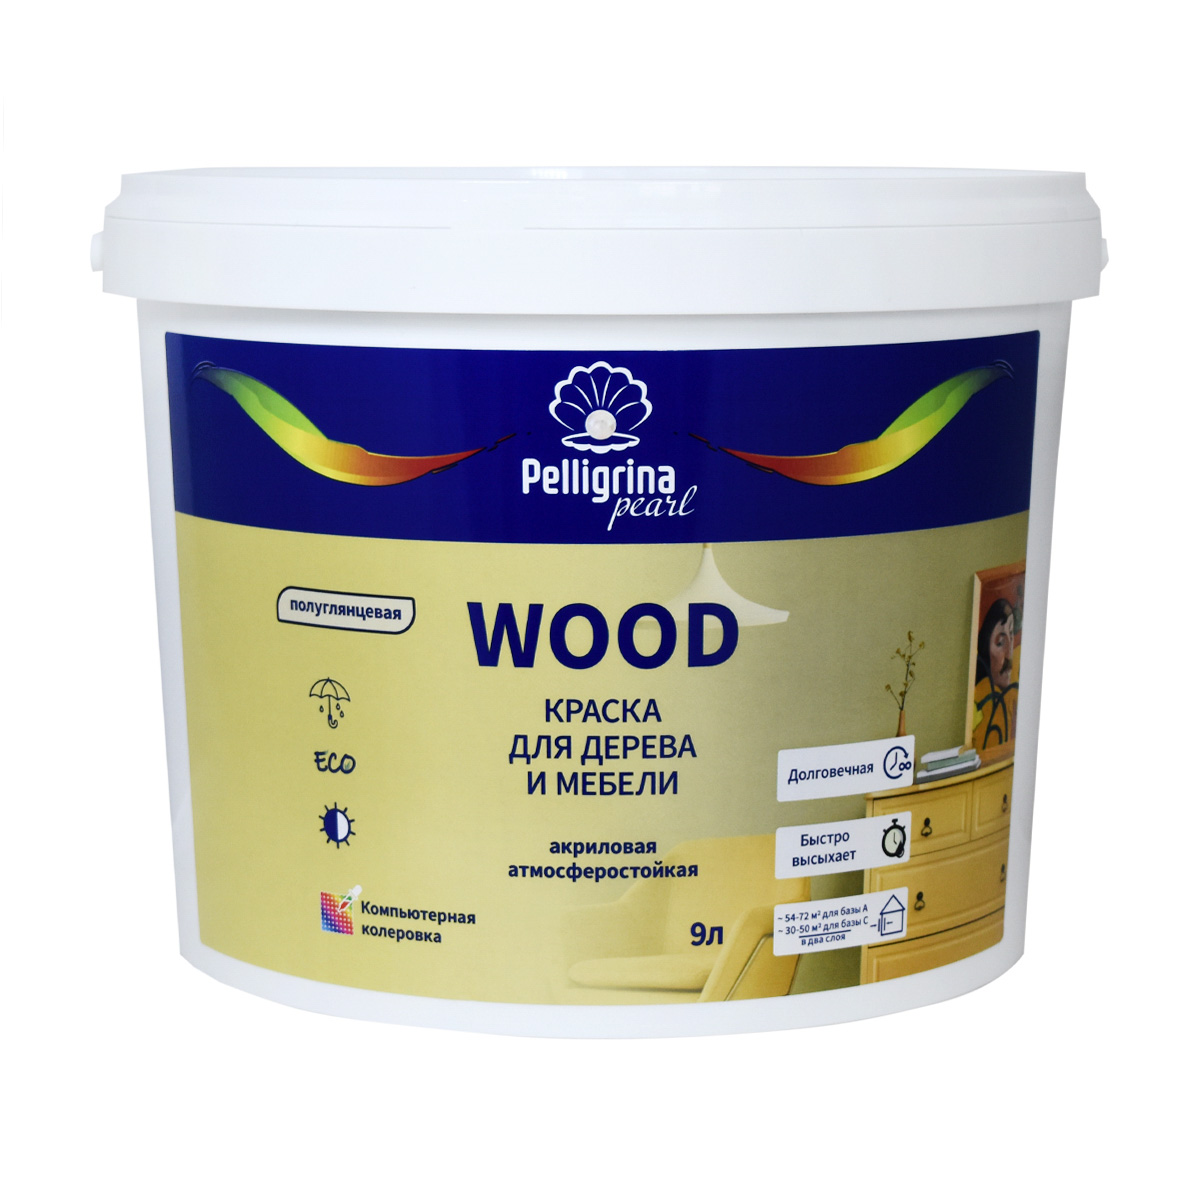 Краска для дерева и мебели Pelligrina Pearl Wood, акриловая, база С, бесцветная, 9 л профессиональная смывка для краски с дерева telakka wood 13 кг